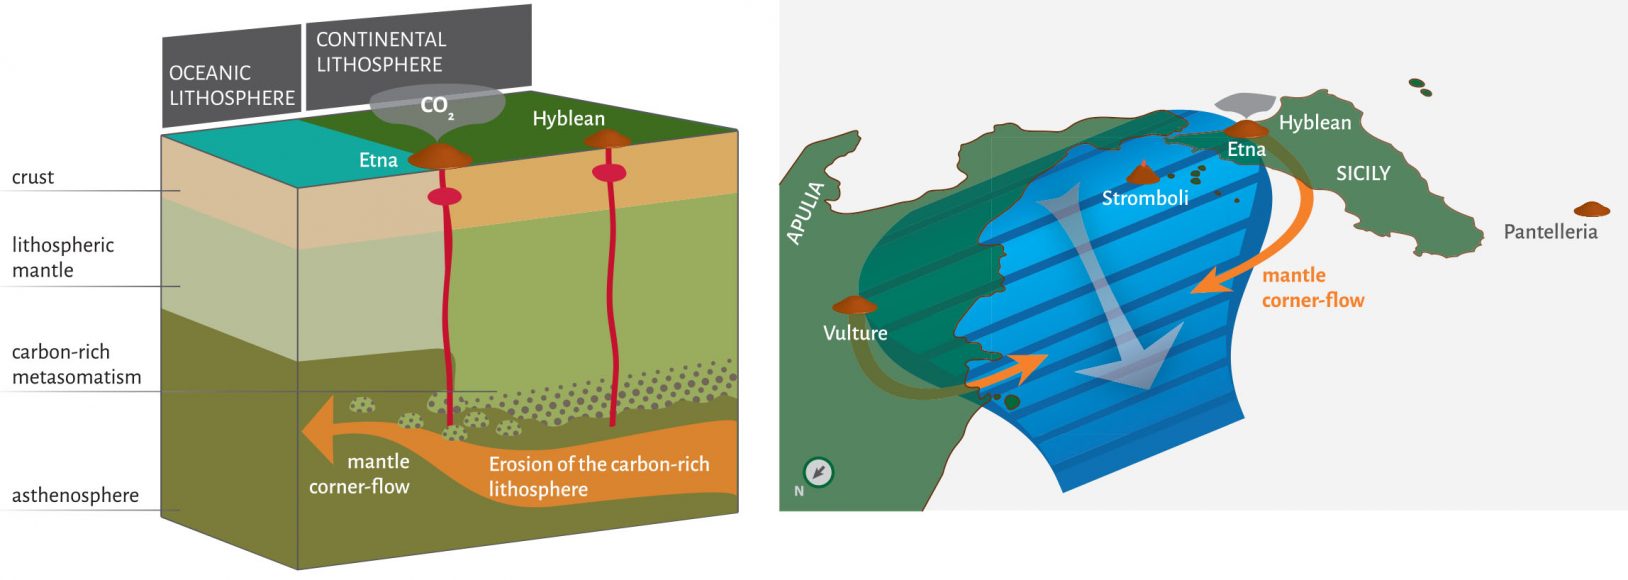 Il rilascio di carbonio dalla porzione di mantello sottostante l’Etna che causa le alte emissioni di anidride carbonica e il contesto geodinamico dell’Italia meridionale.